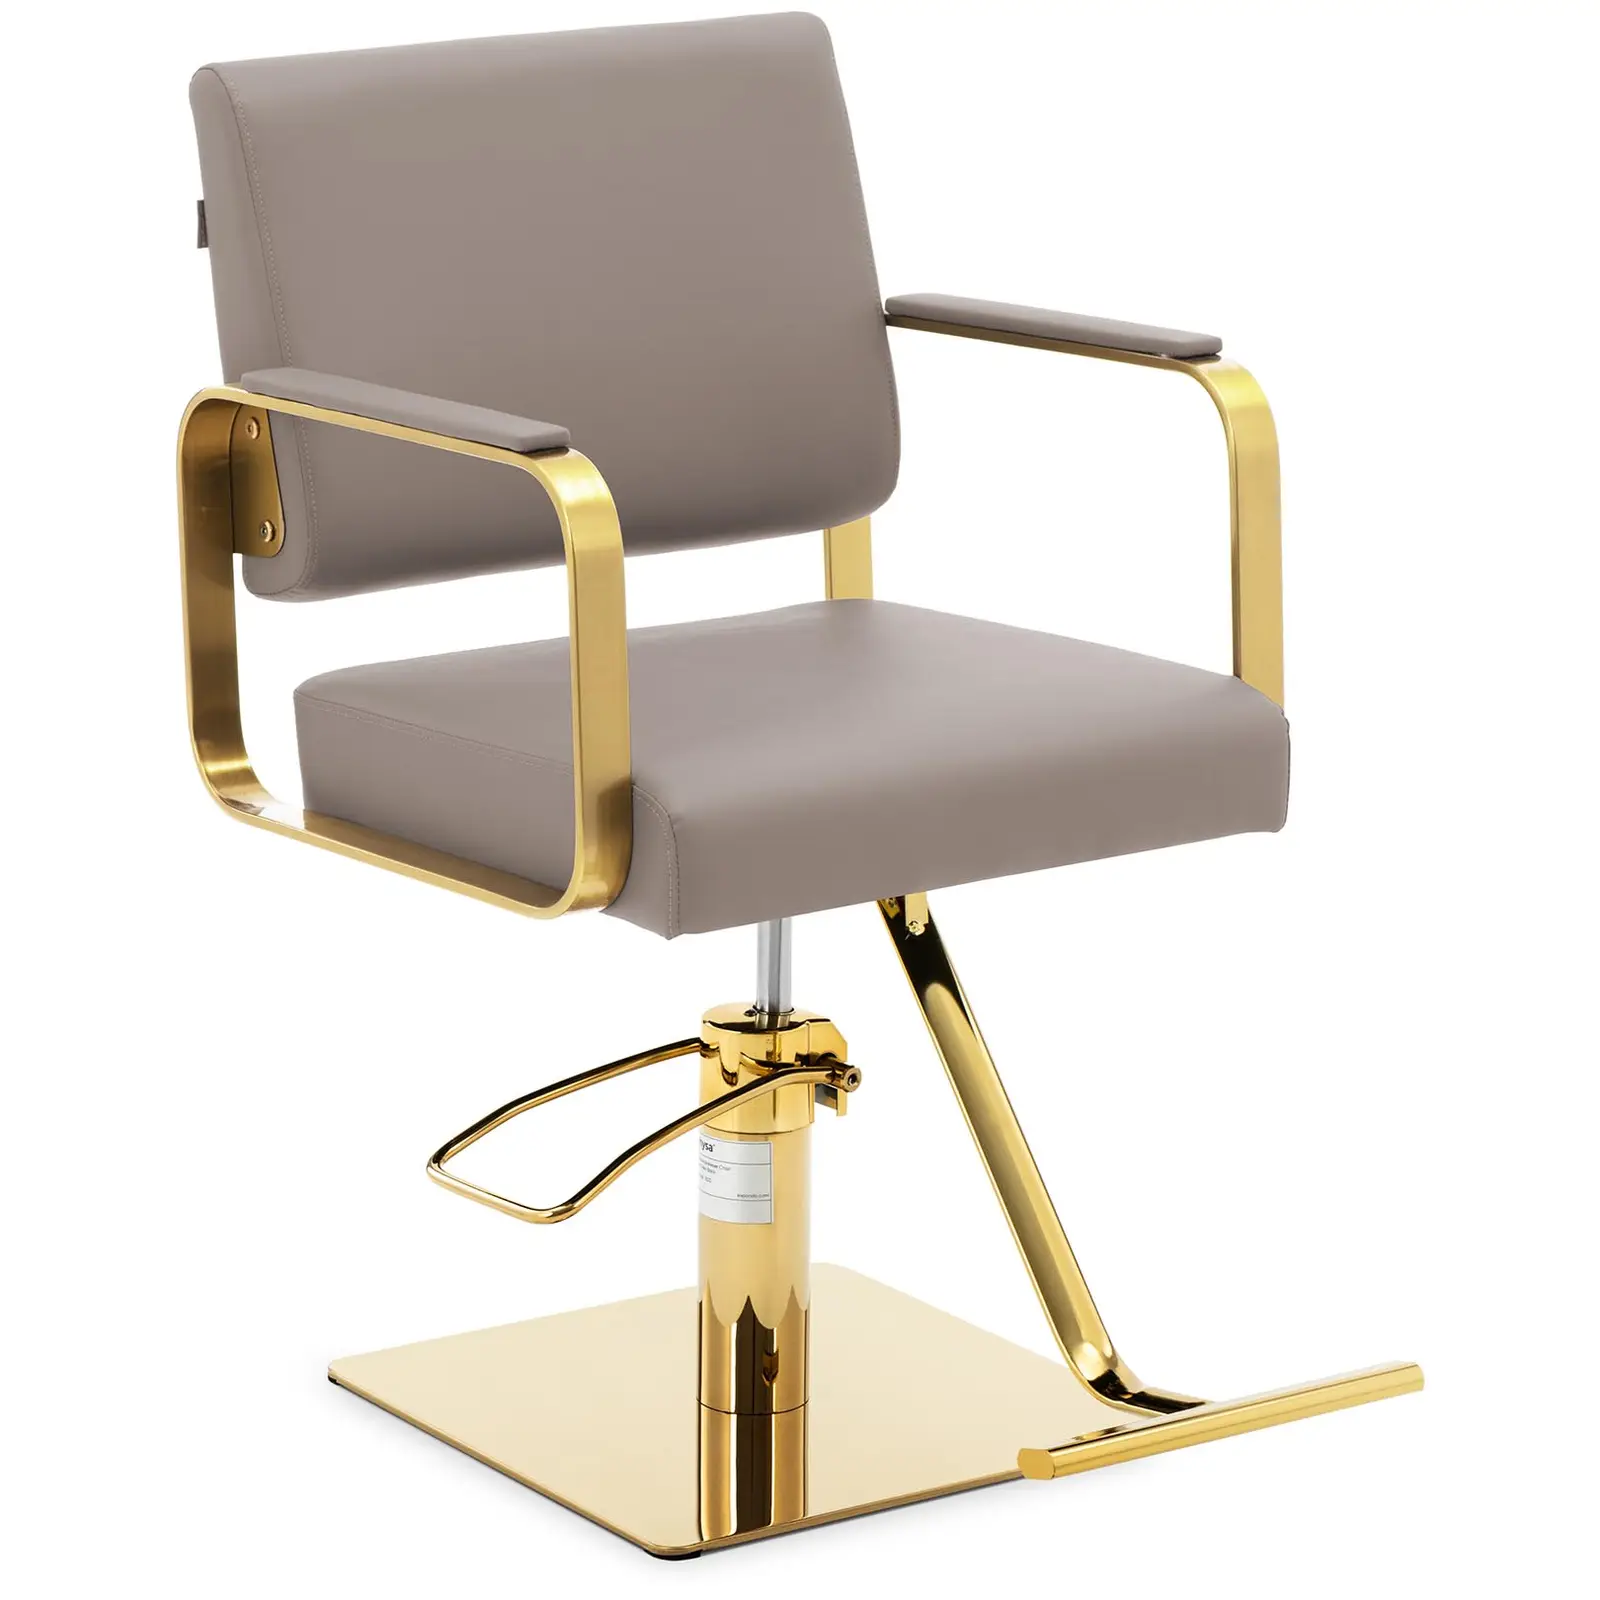 Fodrász szék lábtartóval - 900–1050 mm - 200 kg - bézs / arany